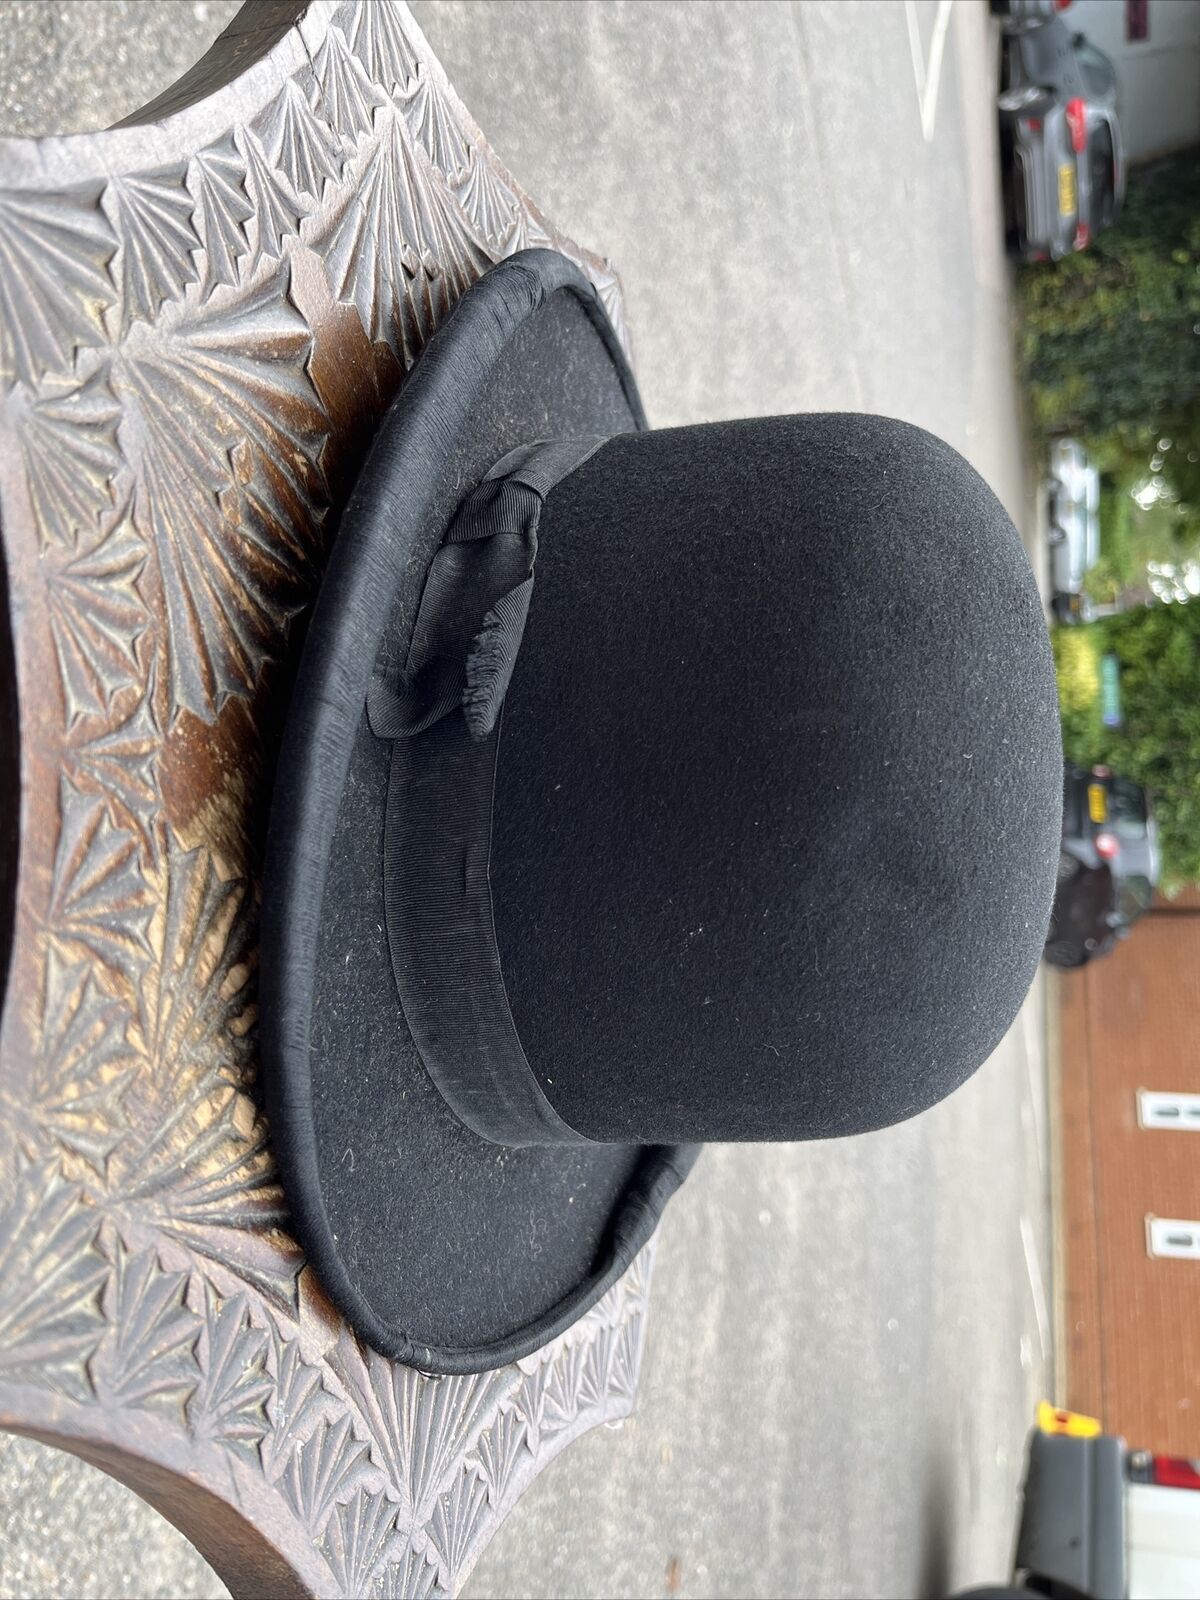 Edwardian Bowler Hat